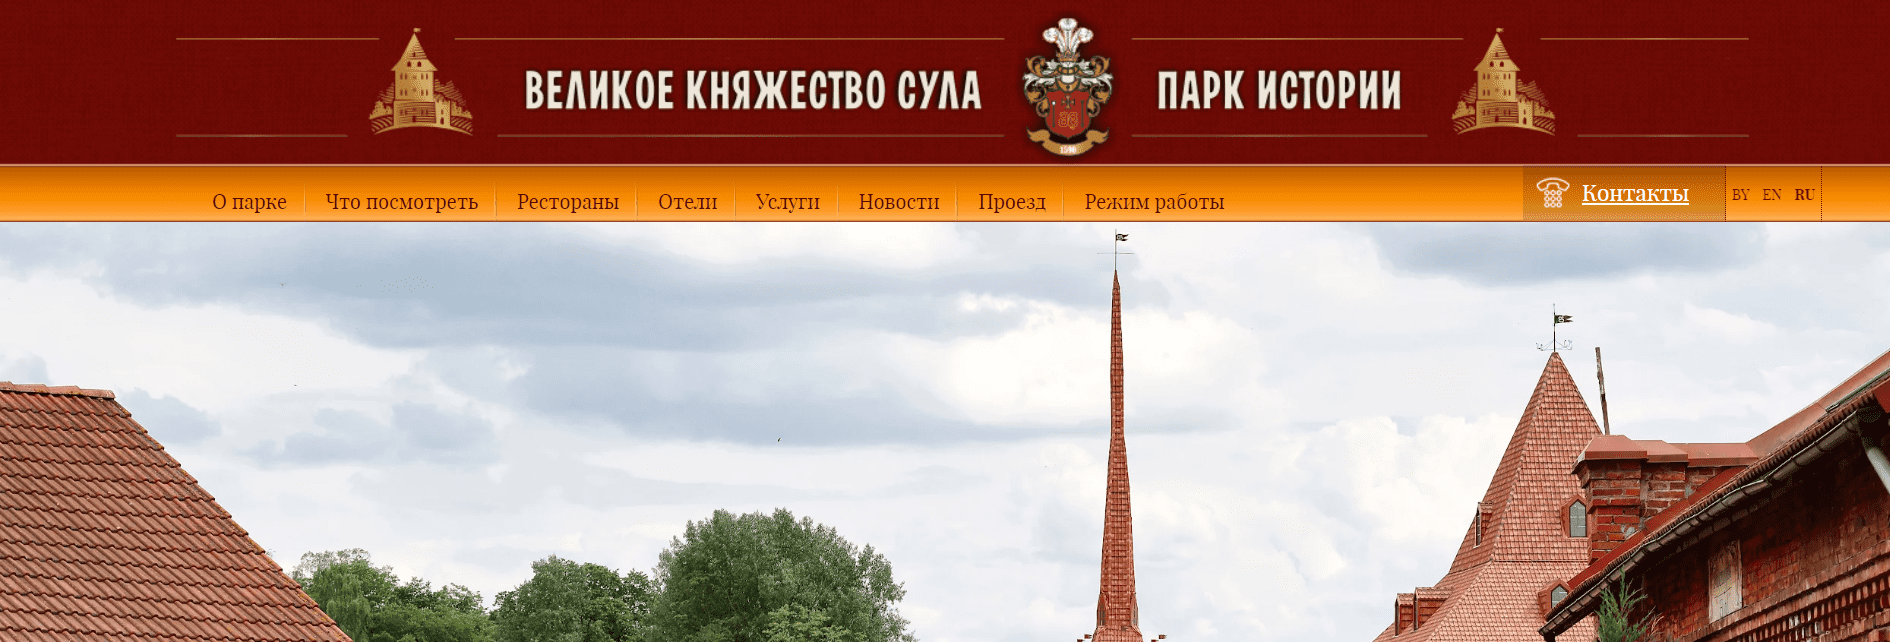 Парк Истории «Великое княжество Сула» (parksula.by) - официальный сайт